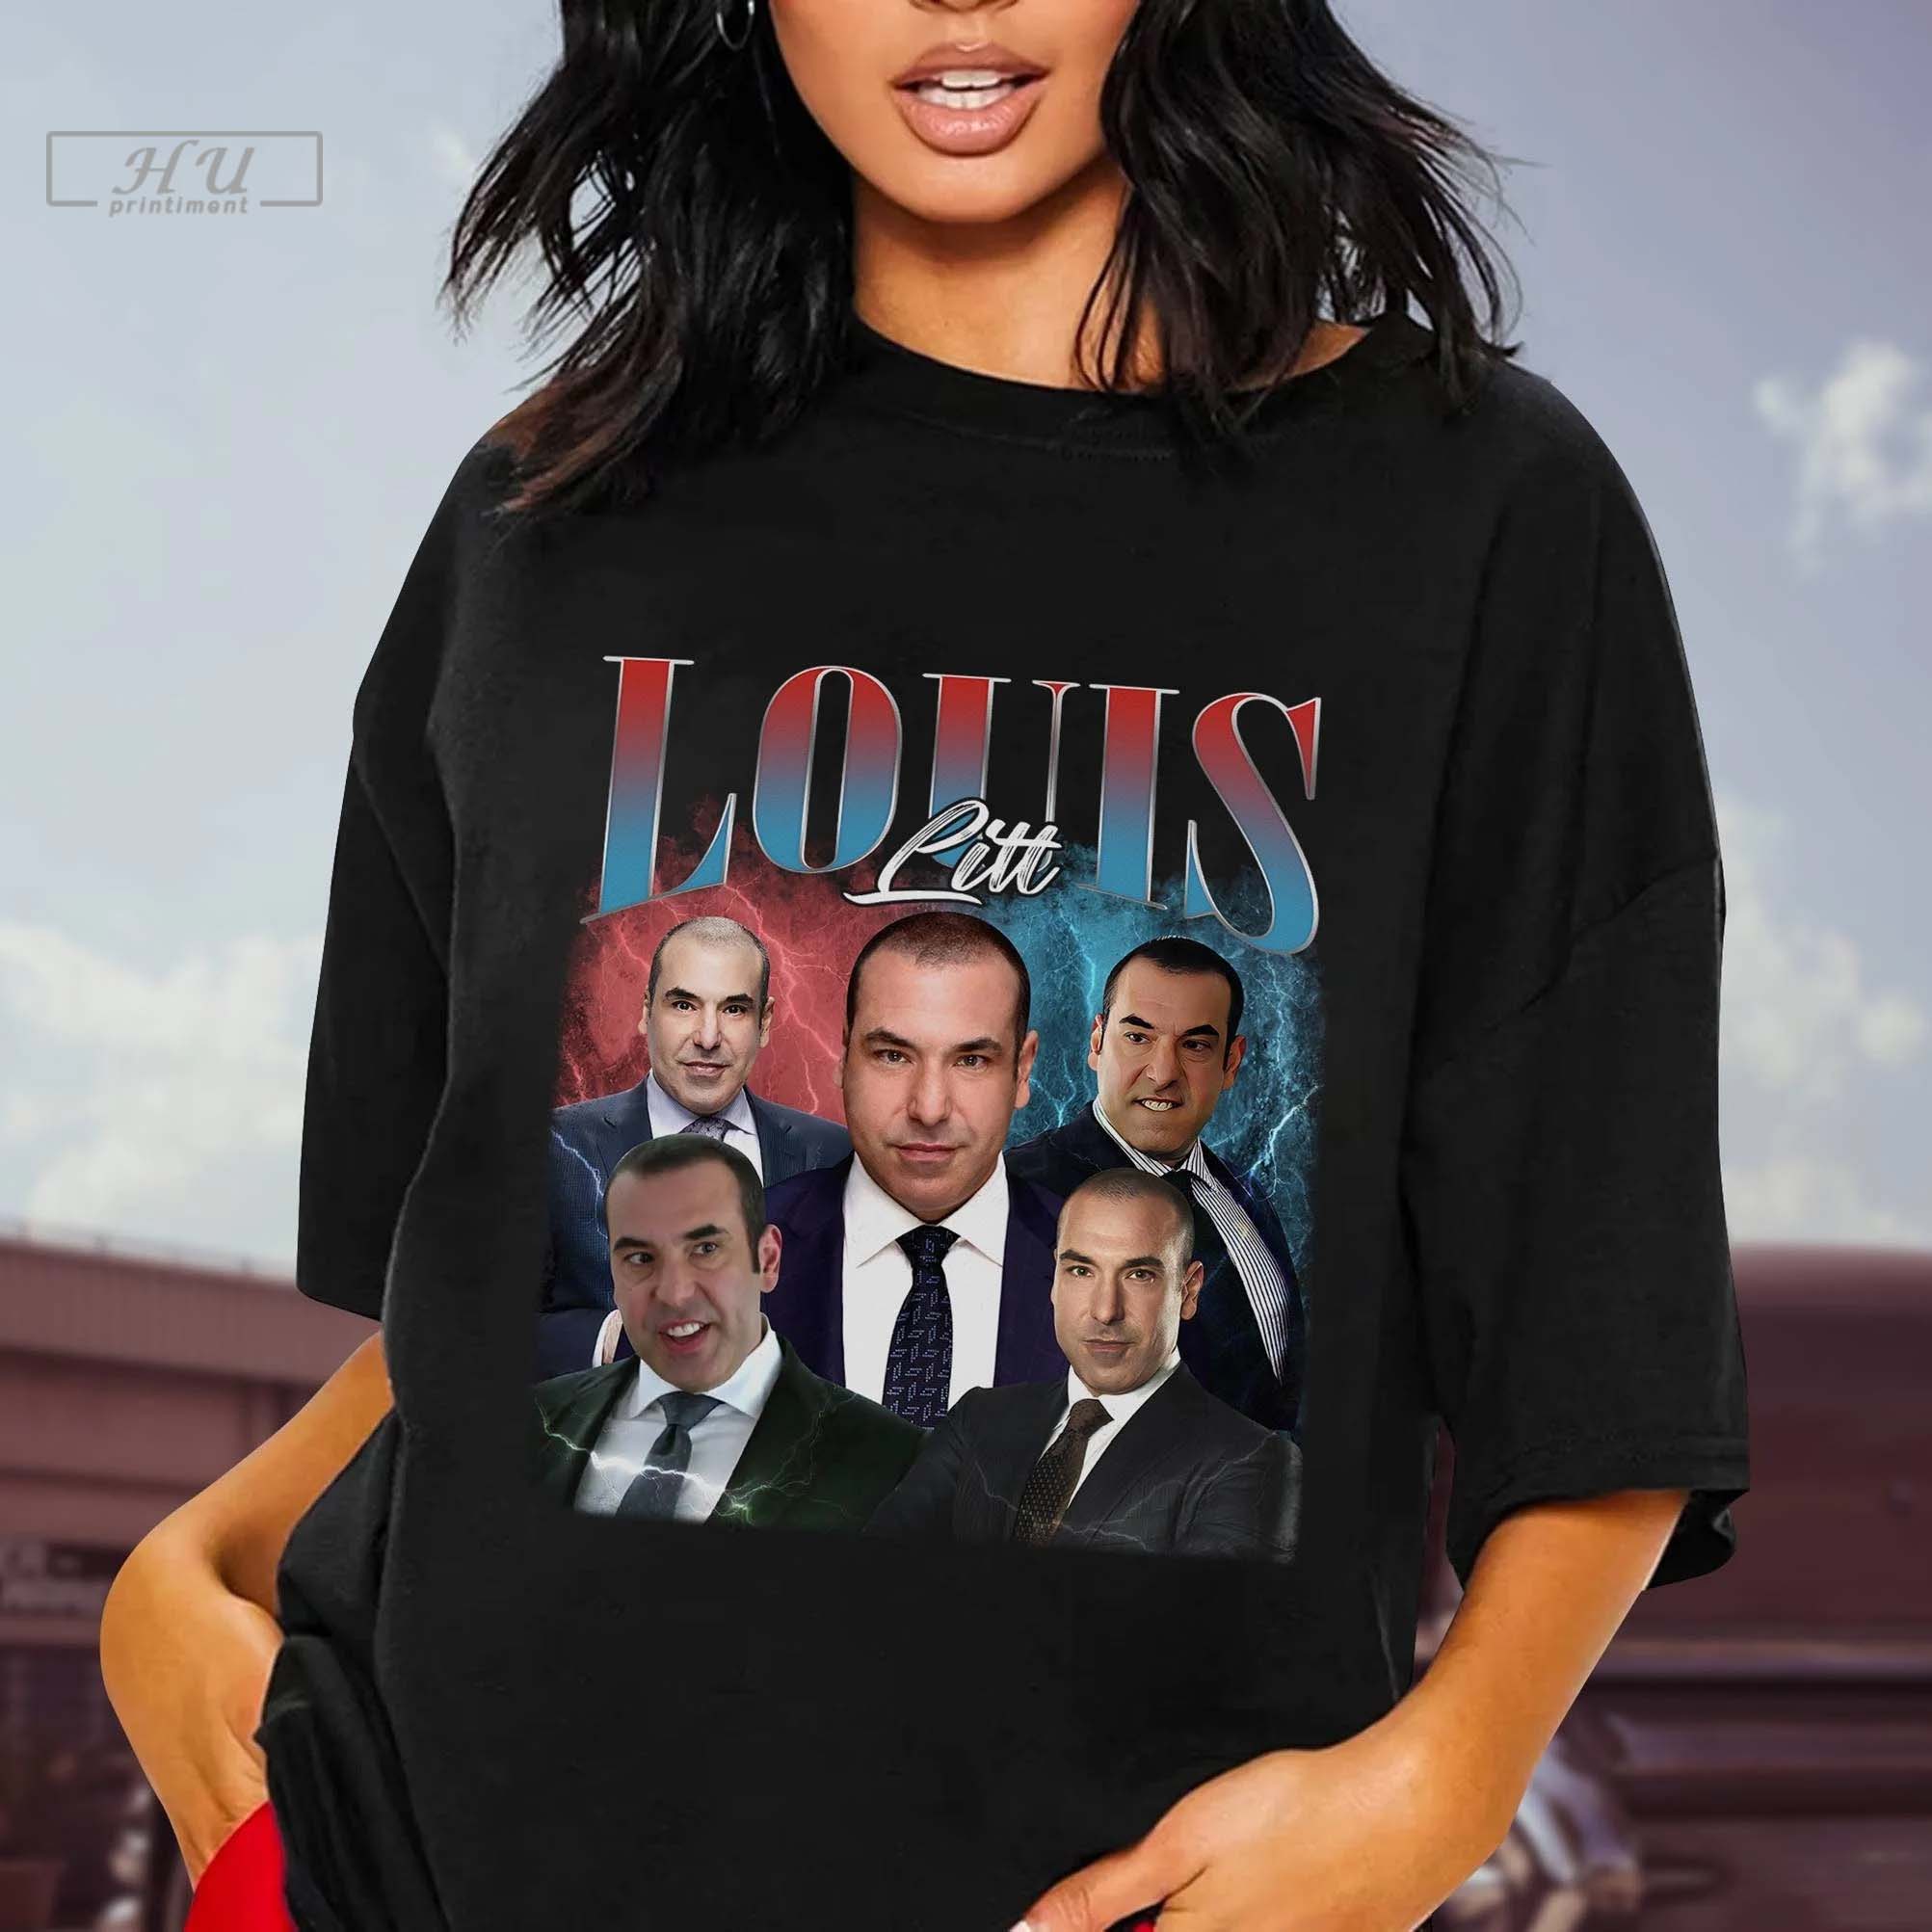 Suits Louis Litt 'You're the man' Merch | Active T-Shirt